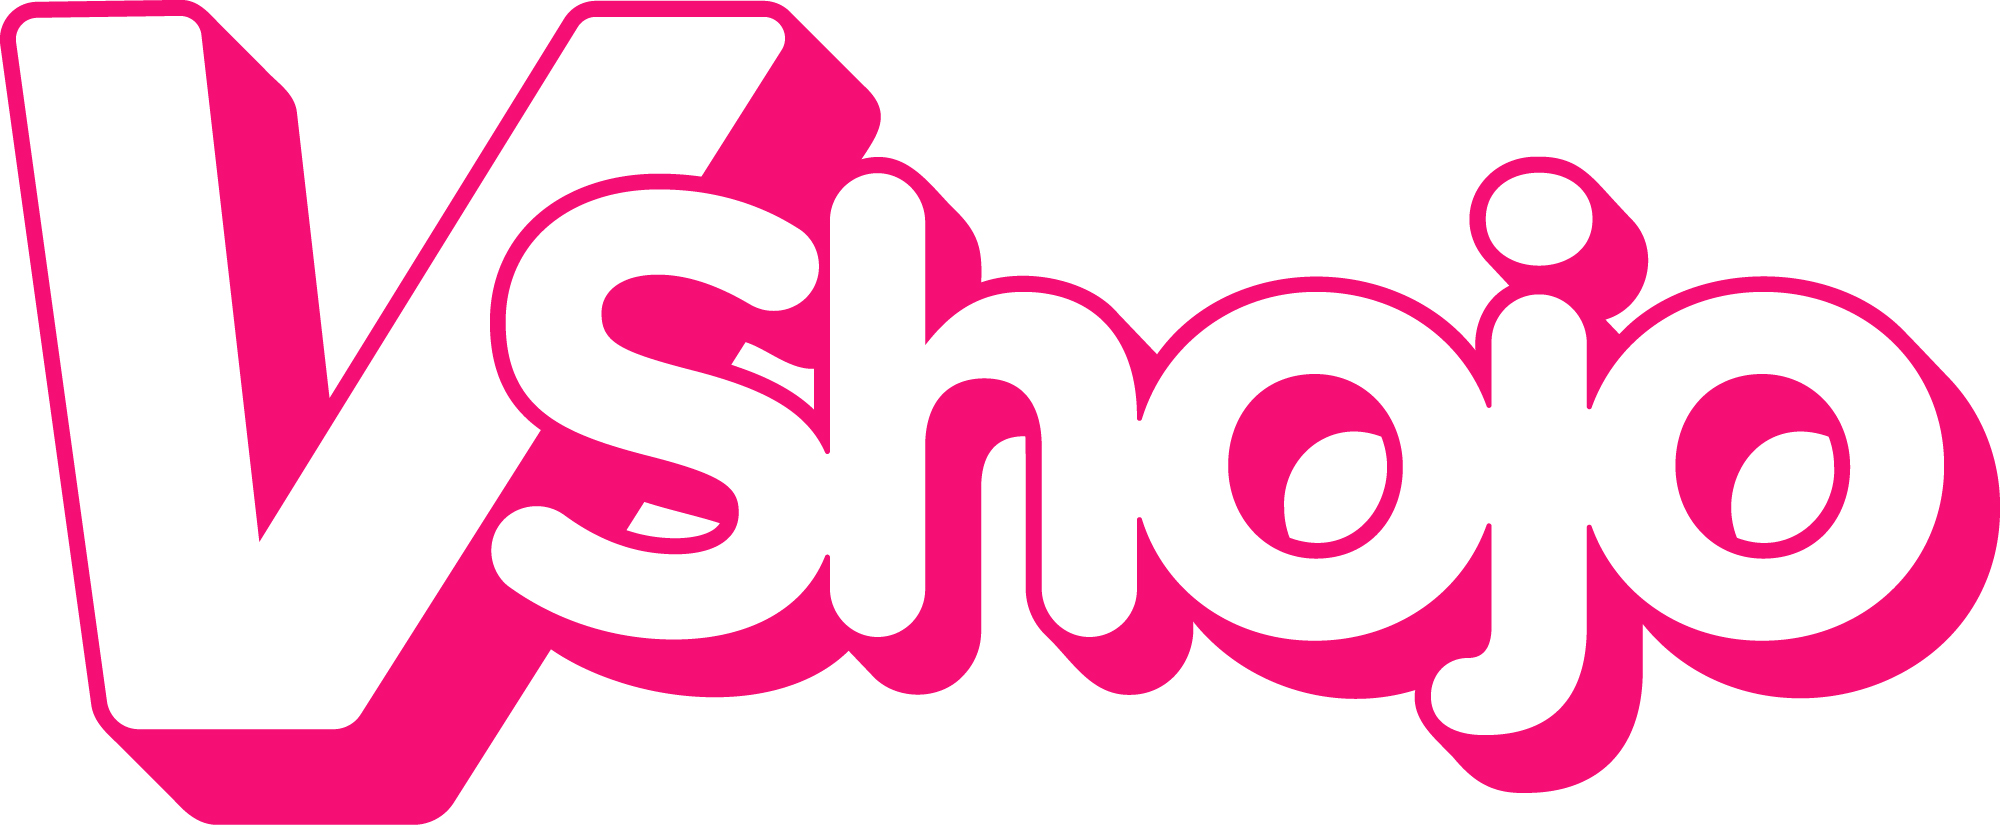 VShojo - Full Logo - RGB - Color.jpg